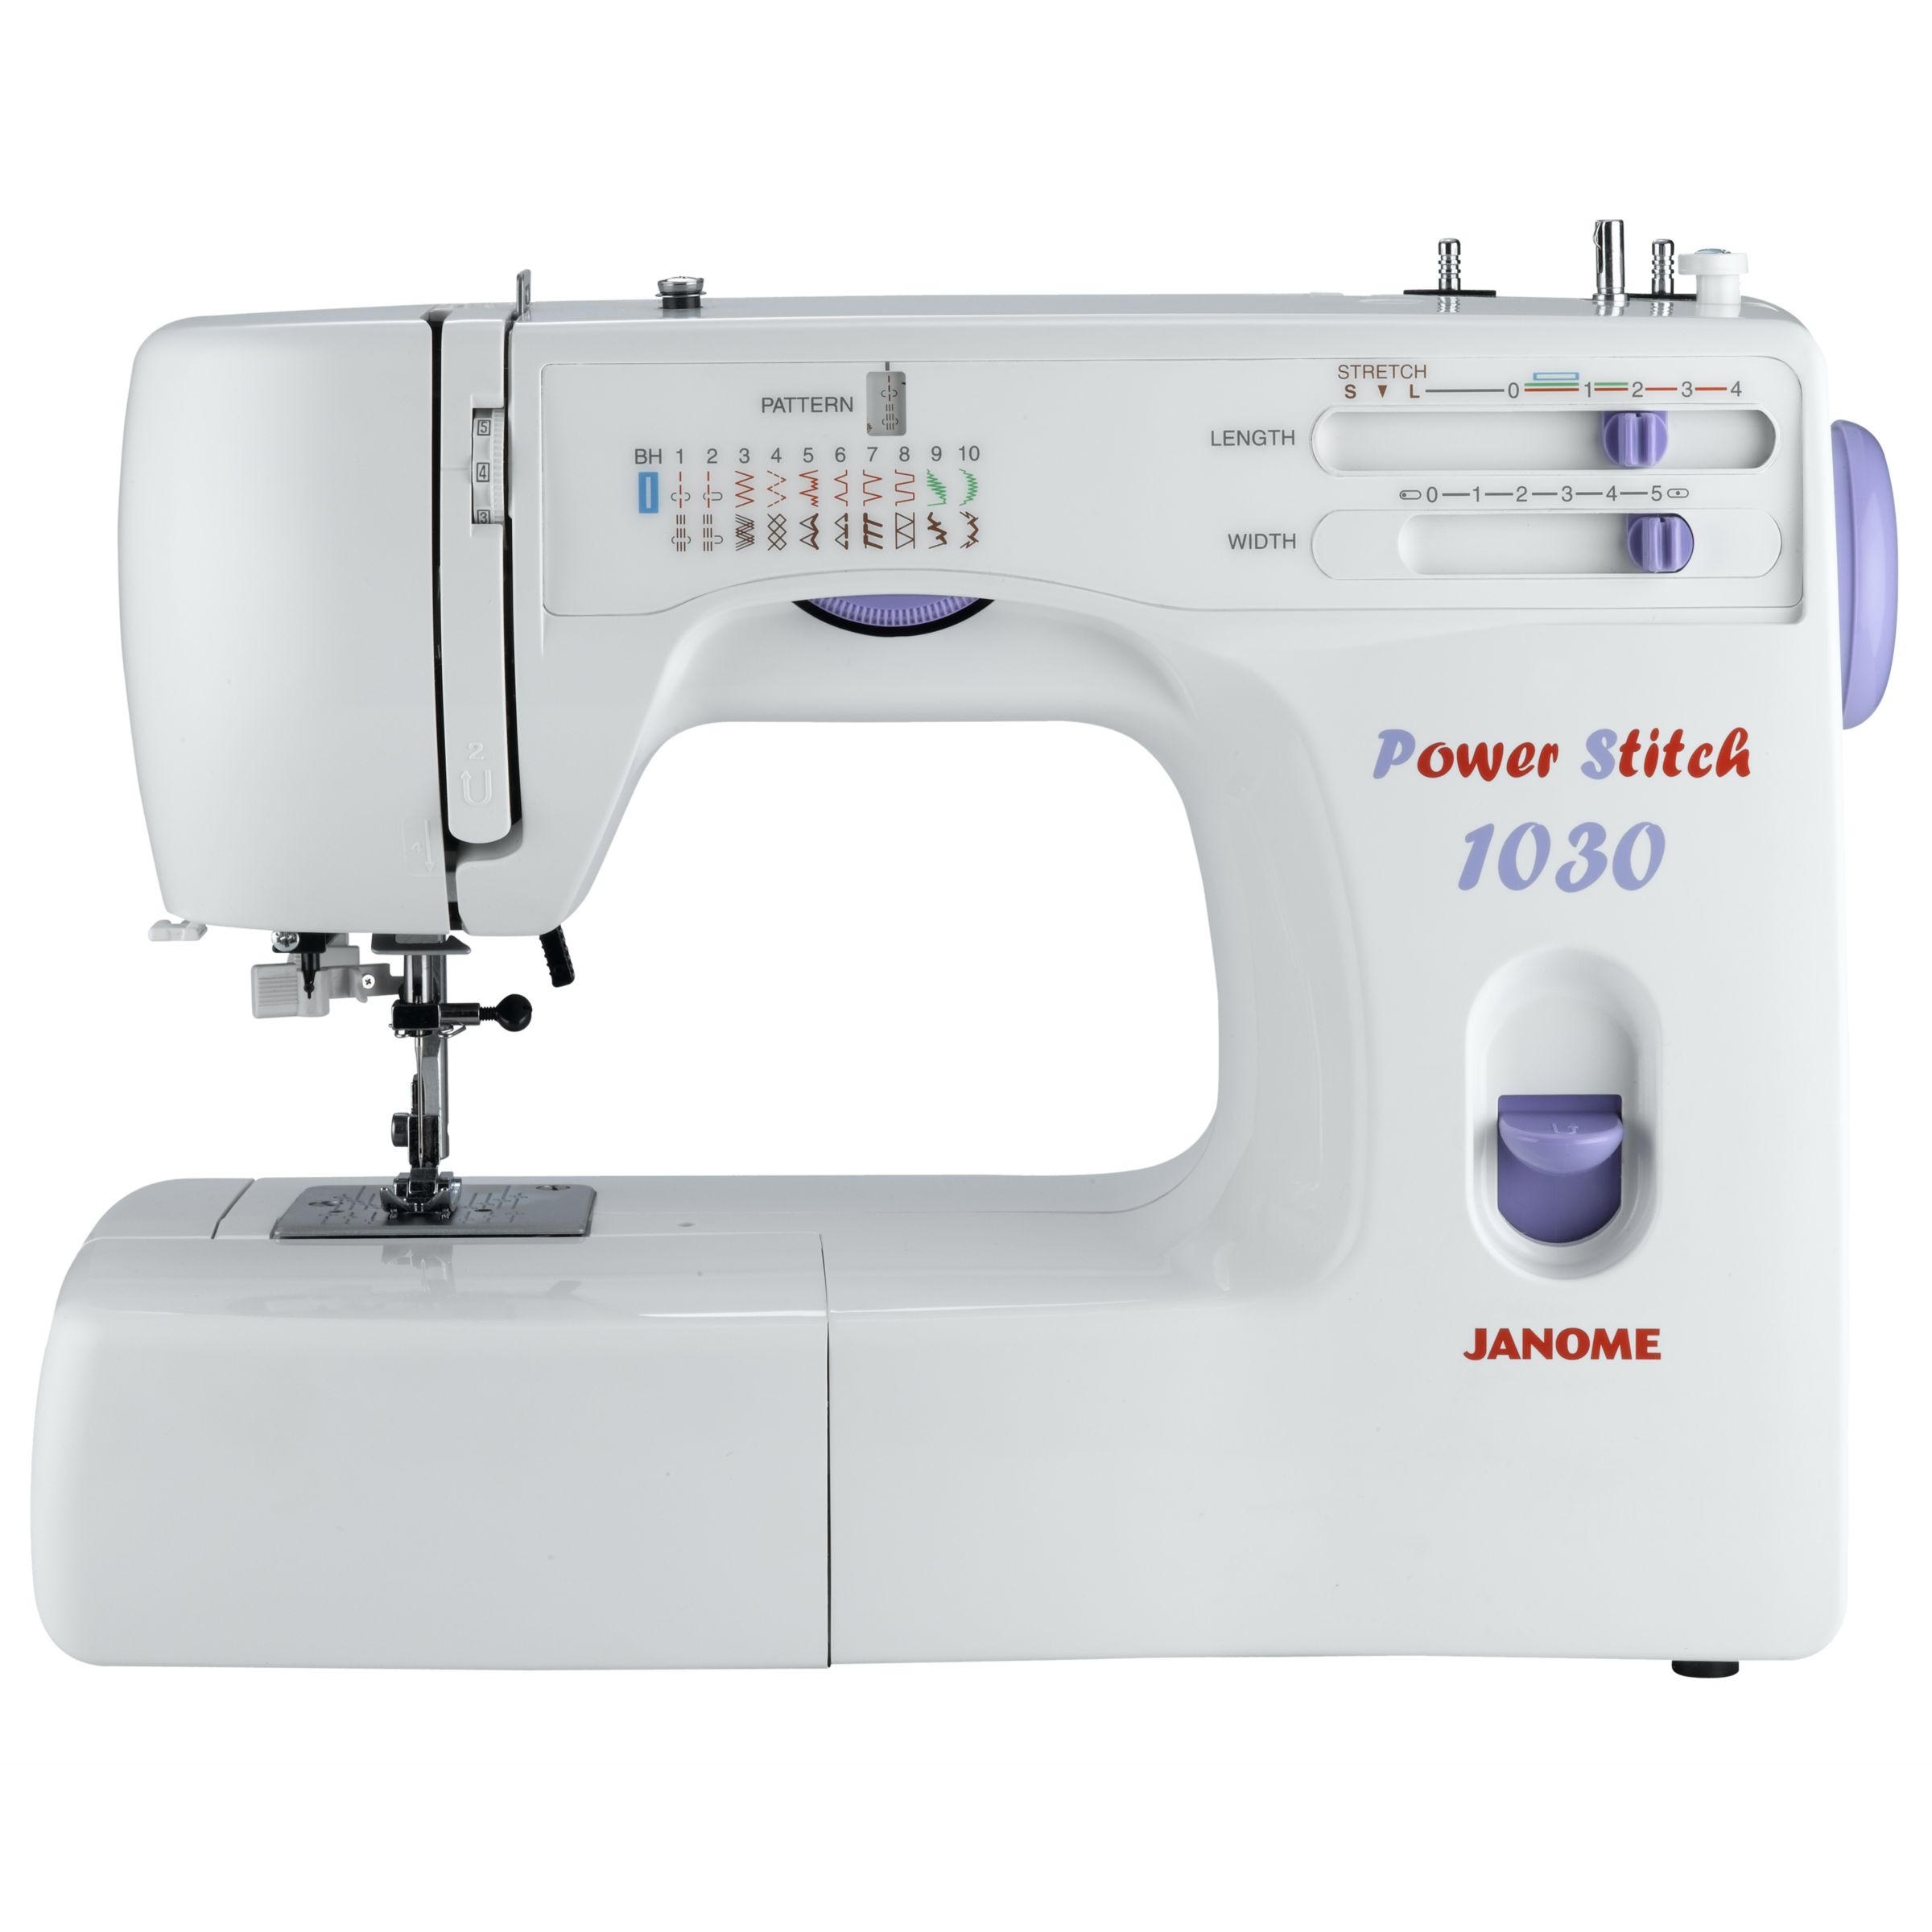 Janome 1030 Power Stitch Sewing Machine 1030